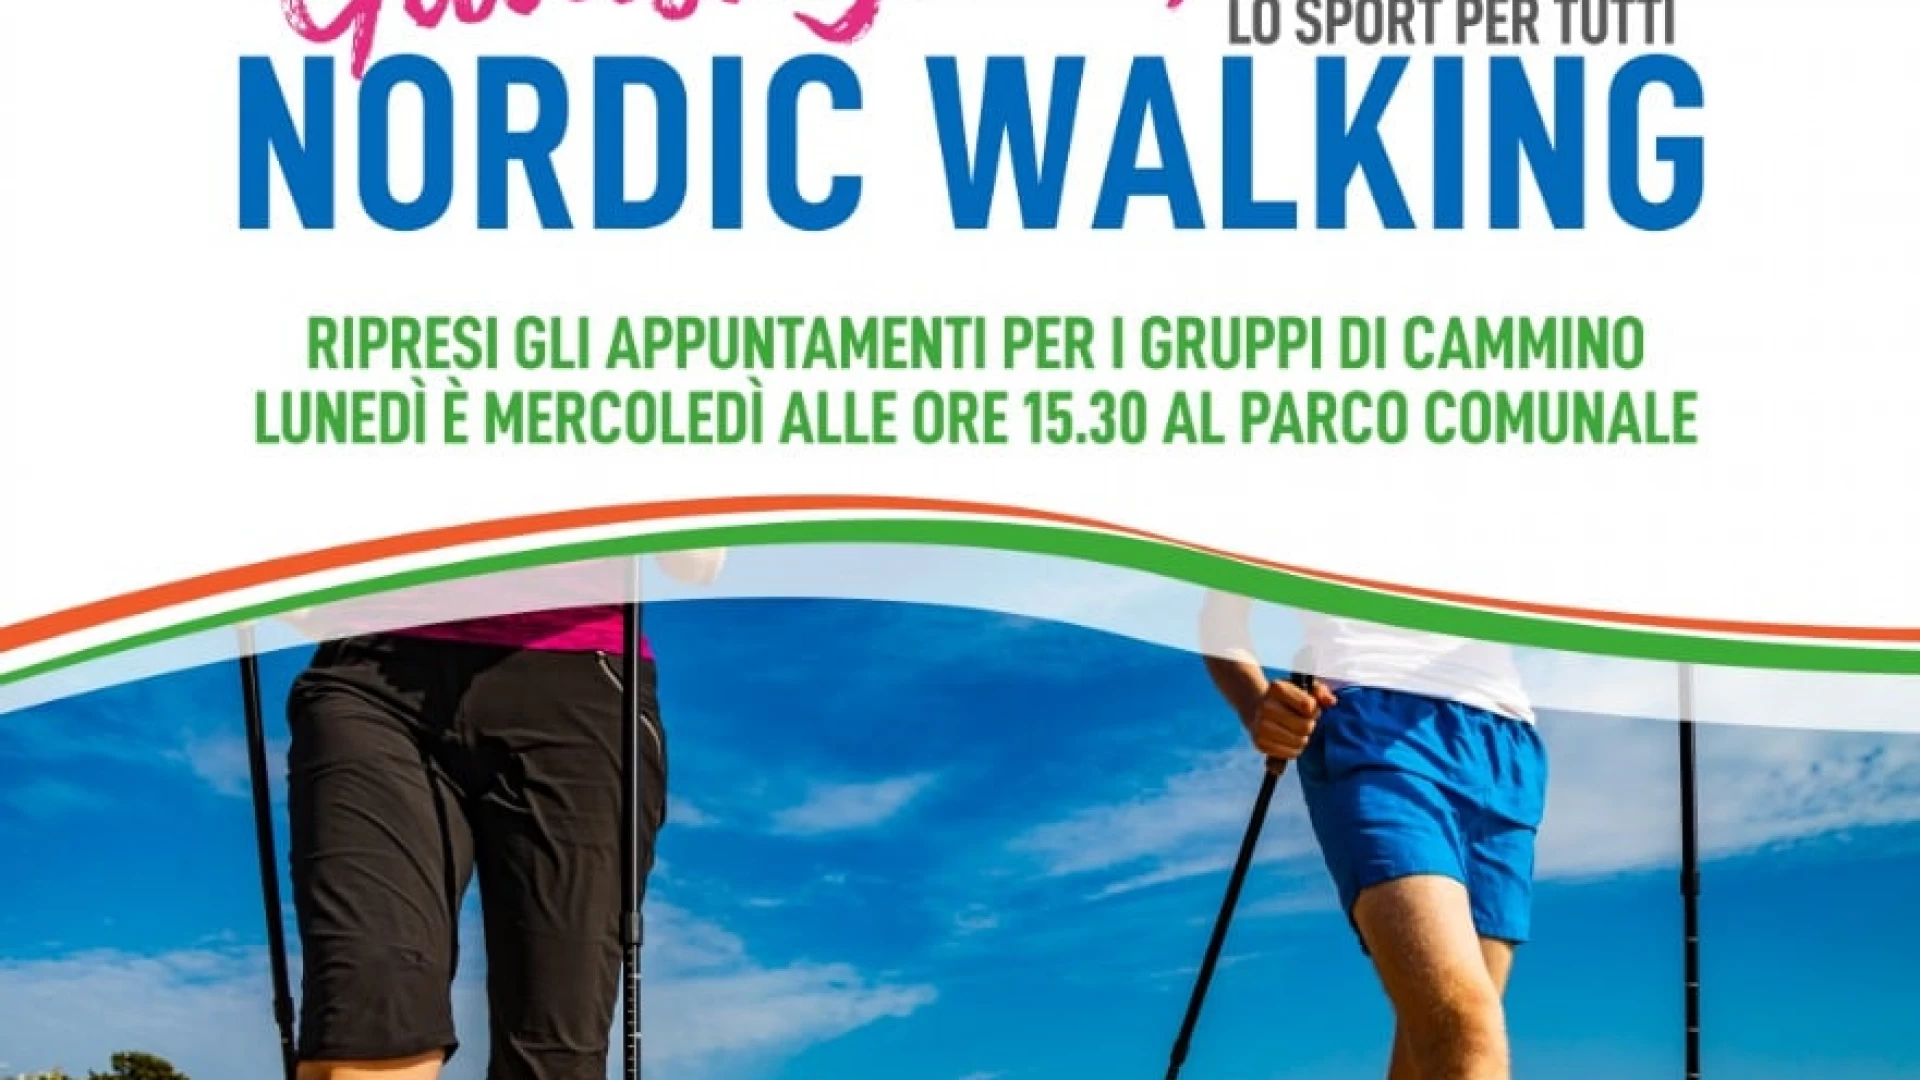 “Cammino e guadagno salute” – Tornano gli appuntamenti gratuiti del nordic walking con l’Associazione Provinciale LILT di Campobasso